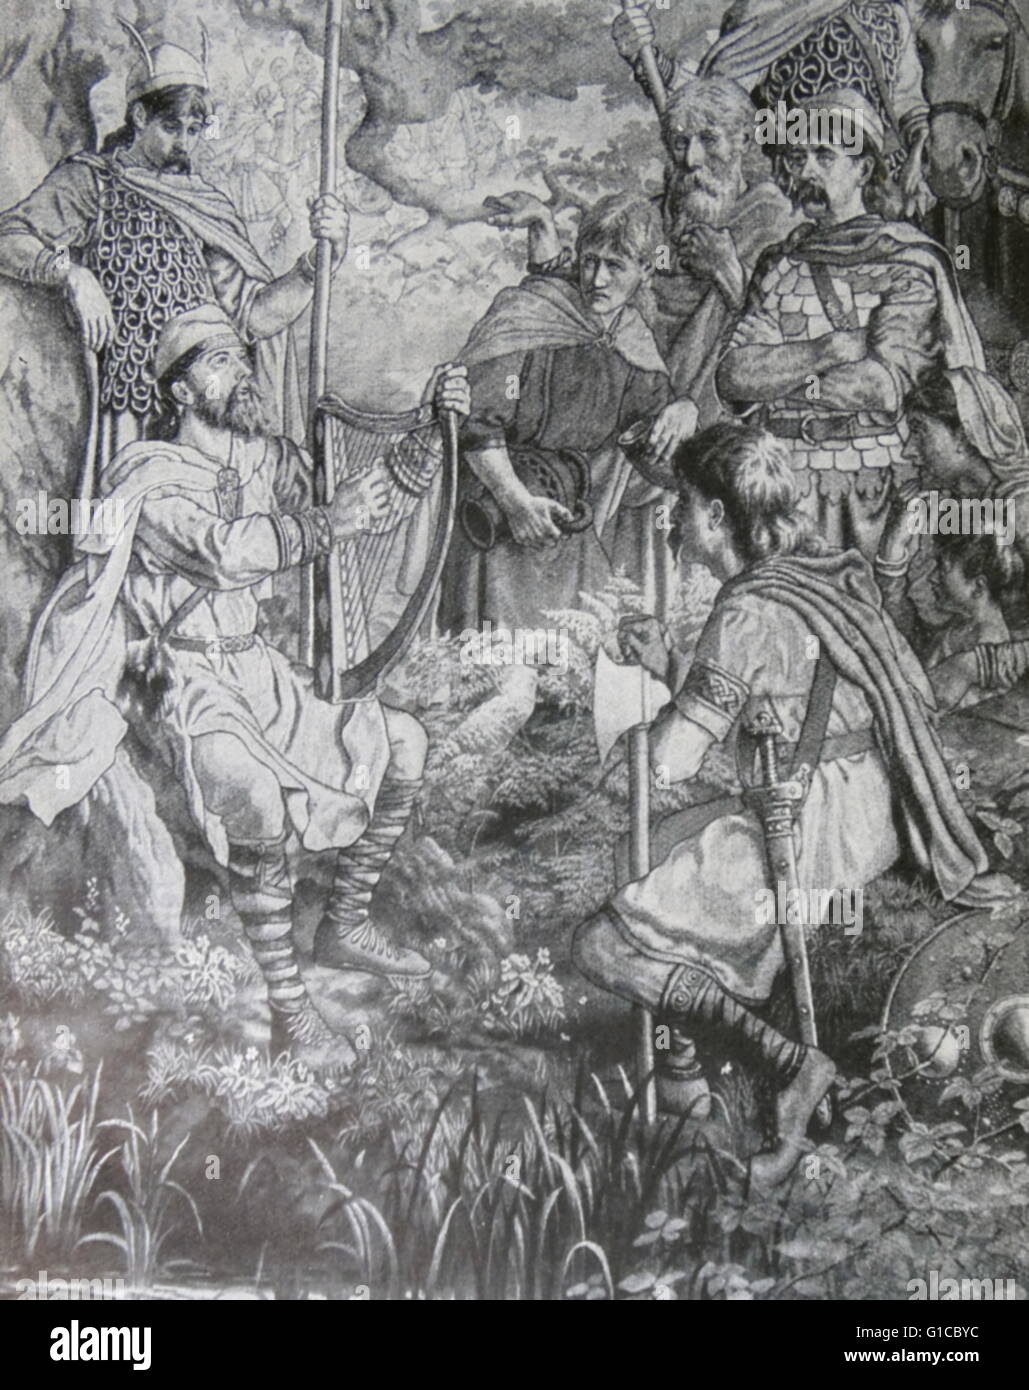 Gravieren, Darstellung einer Szene aus dem Leben des Alfred der große (849-899) Alfred erfolgreich verteidigte sein Königreich gegen die Wikinger Versuch der Eroberung, und zum Zeitpunkt seines Todes war der dominierende Herrscher in England geworden. Vom 9. Jahrhundert Stockfoto